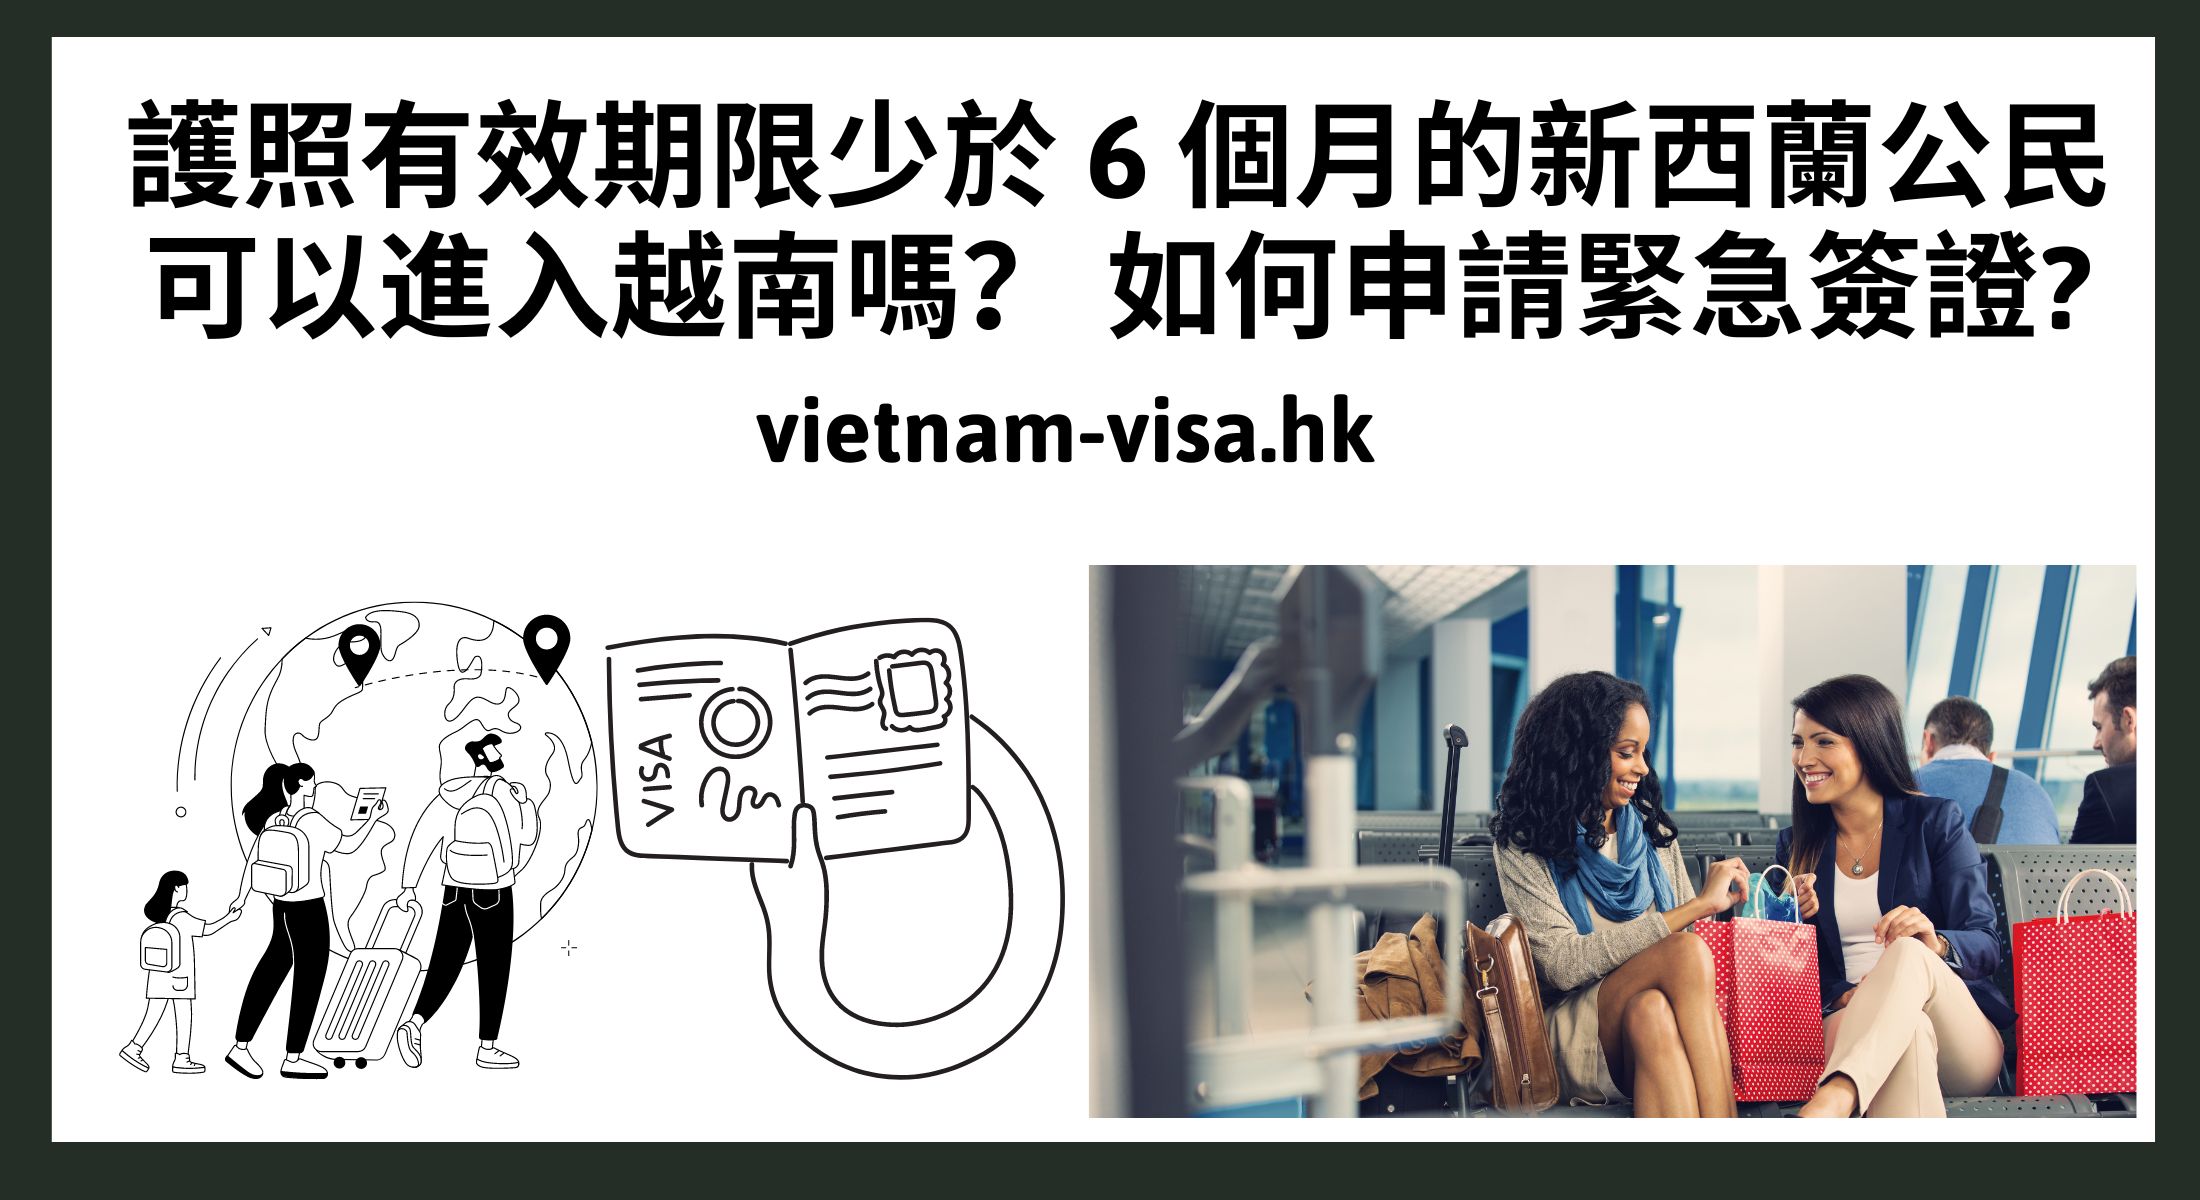 護照有效期限少於 6 個月的新西蘭公民可以進入越南嗎？ 如何申請緊急簽證?